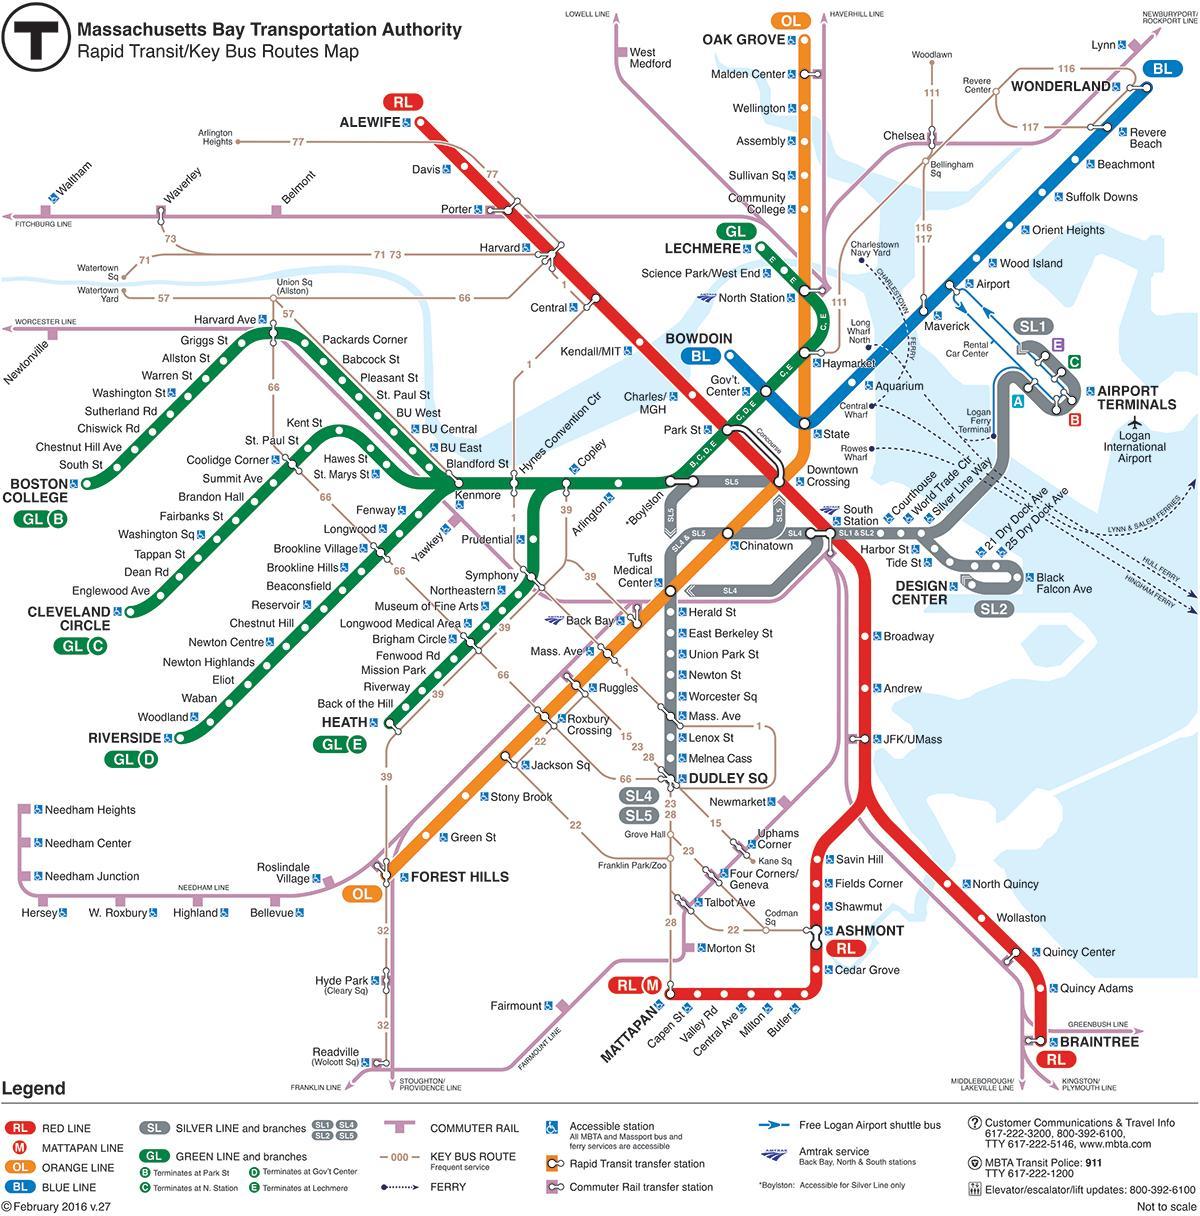 Карта метро црвена линија мбта